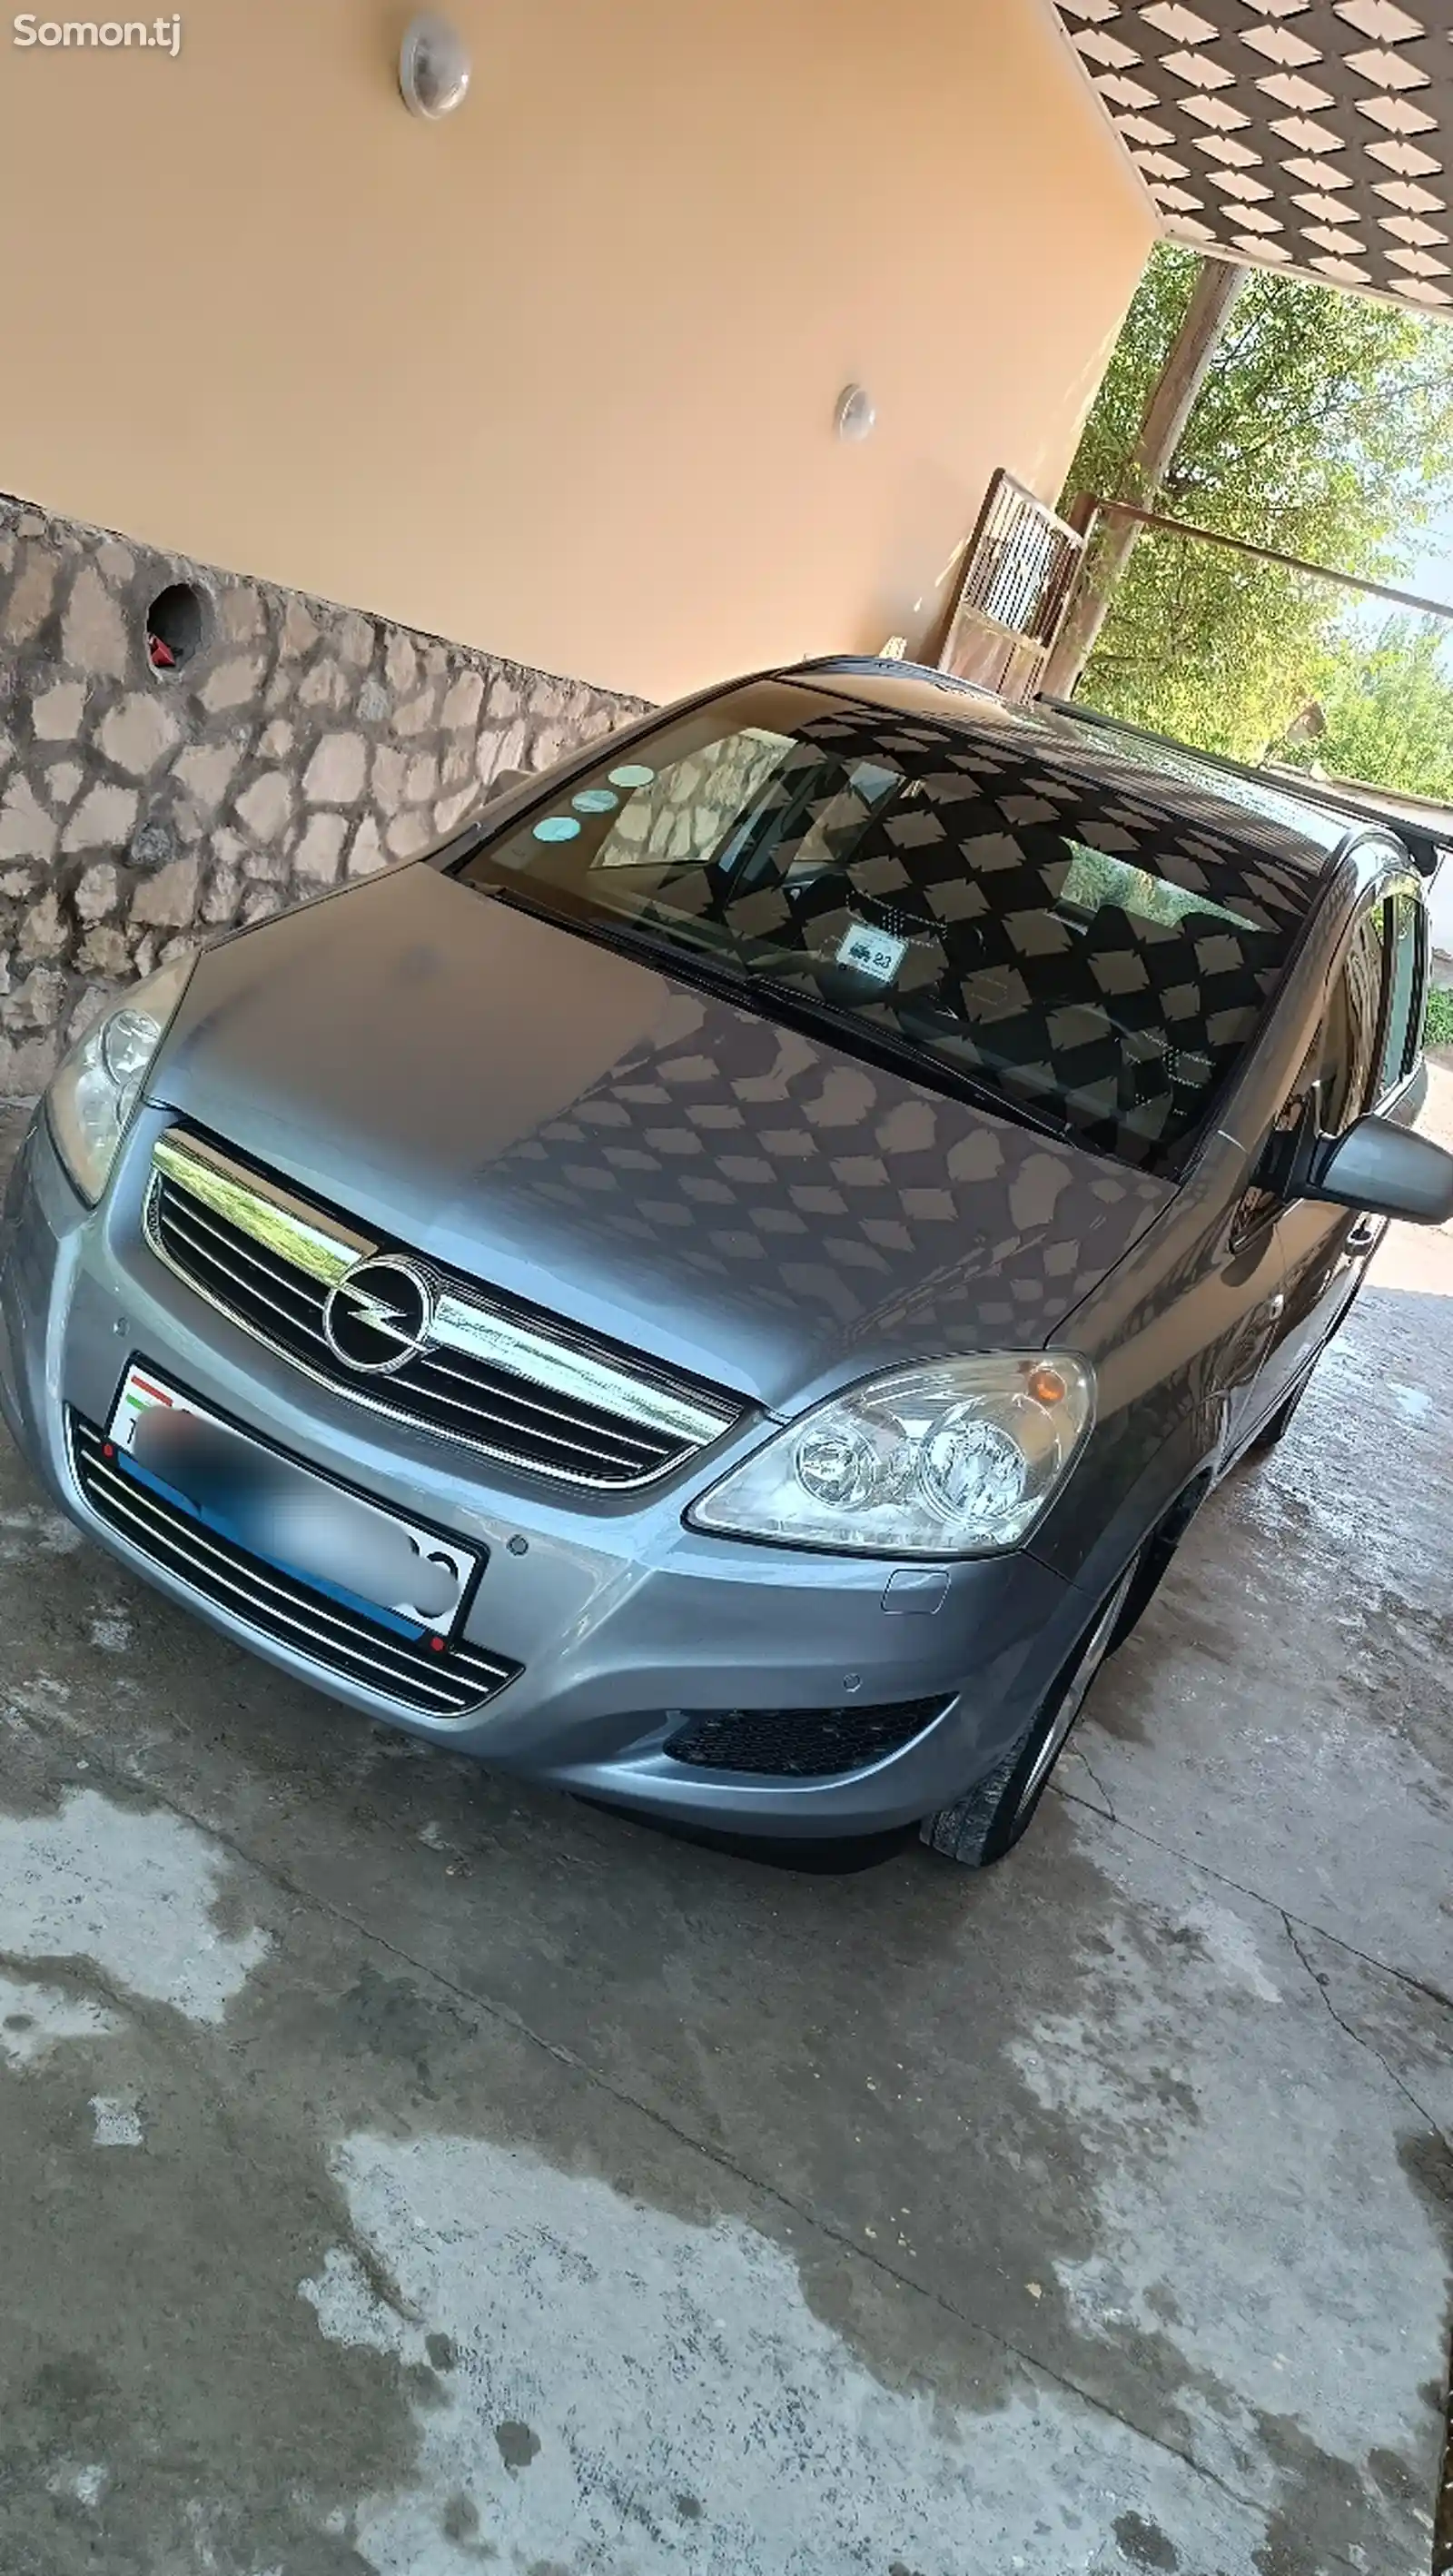 Opel Zafira, 2009-1